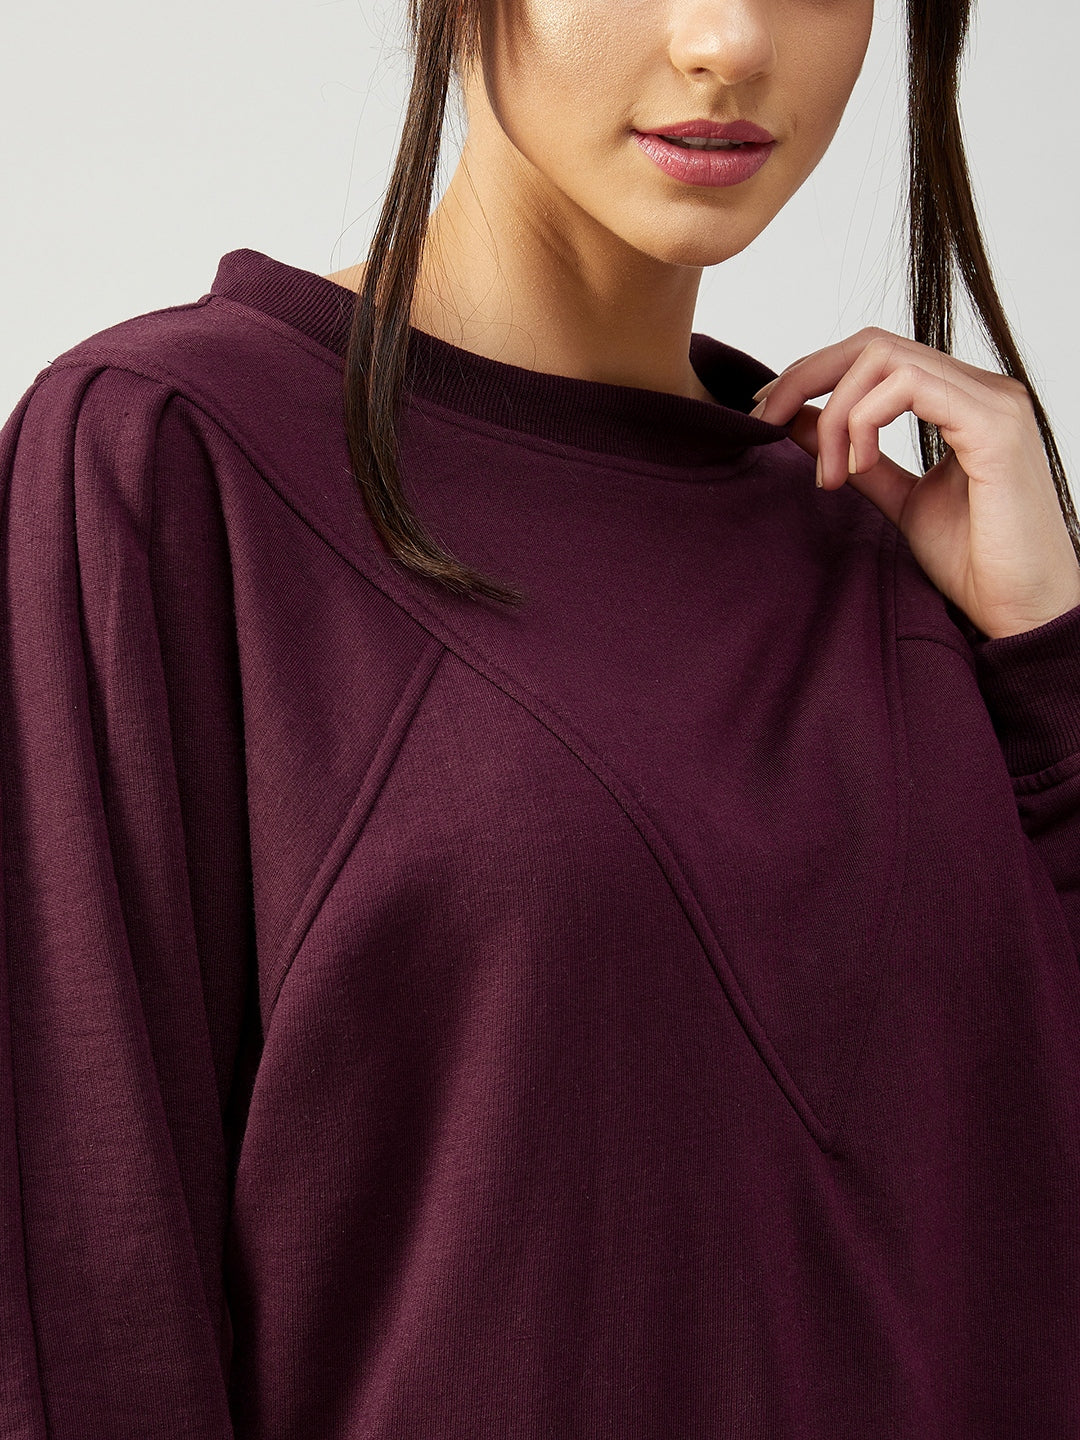 Athena Women Burgundy Fleece Sweatshirt - Athena Lifestyle